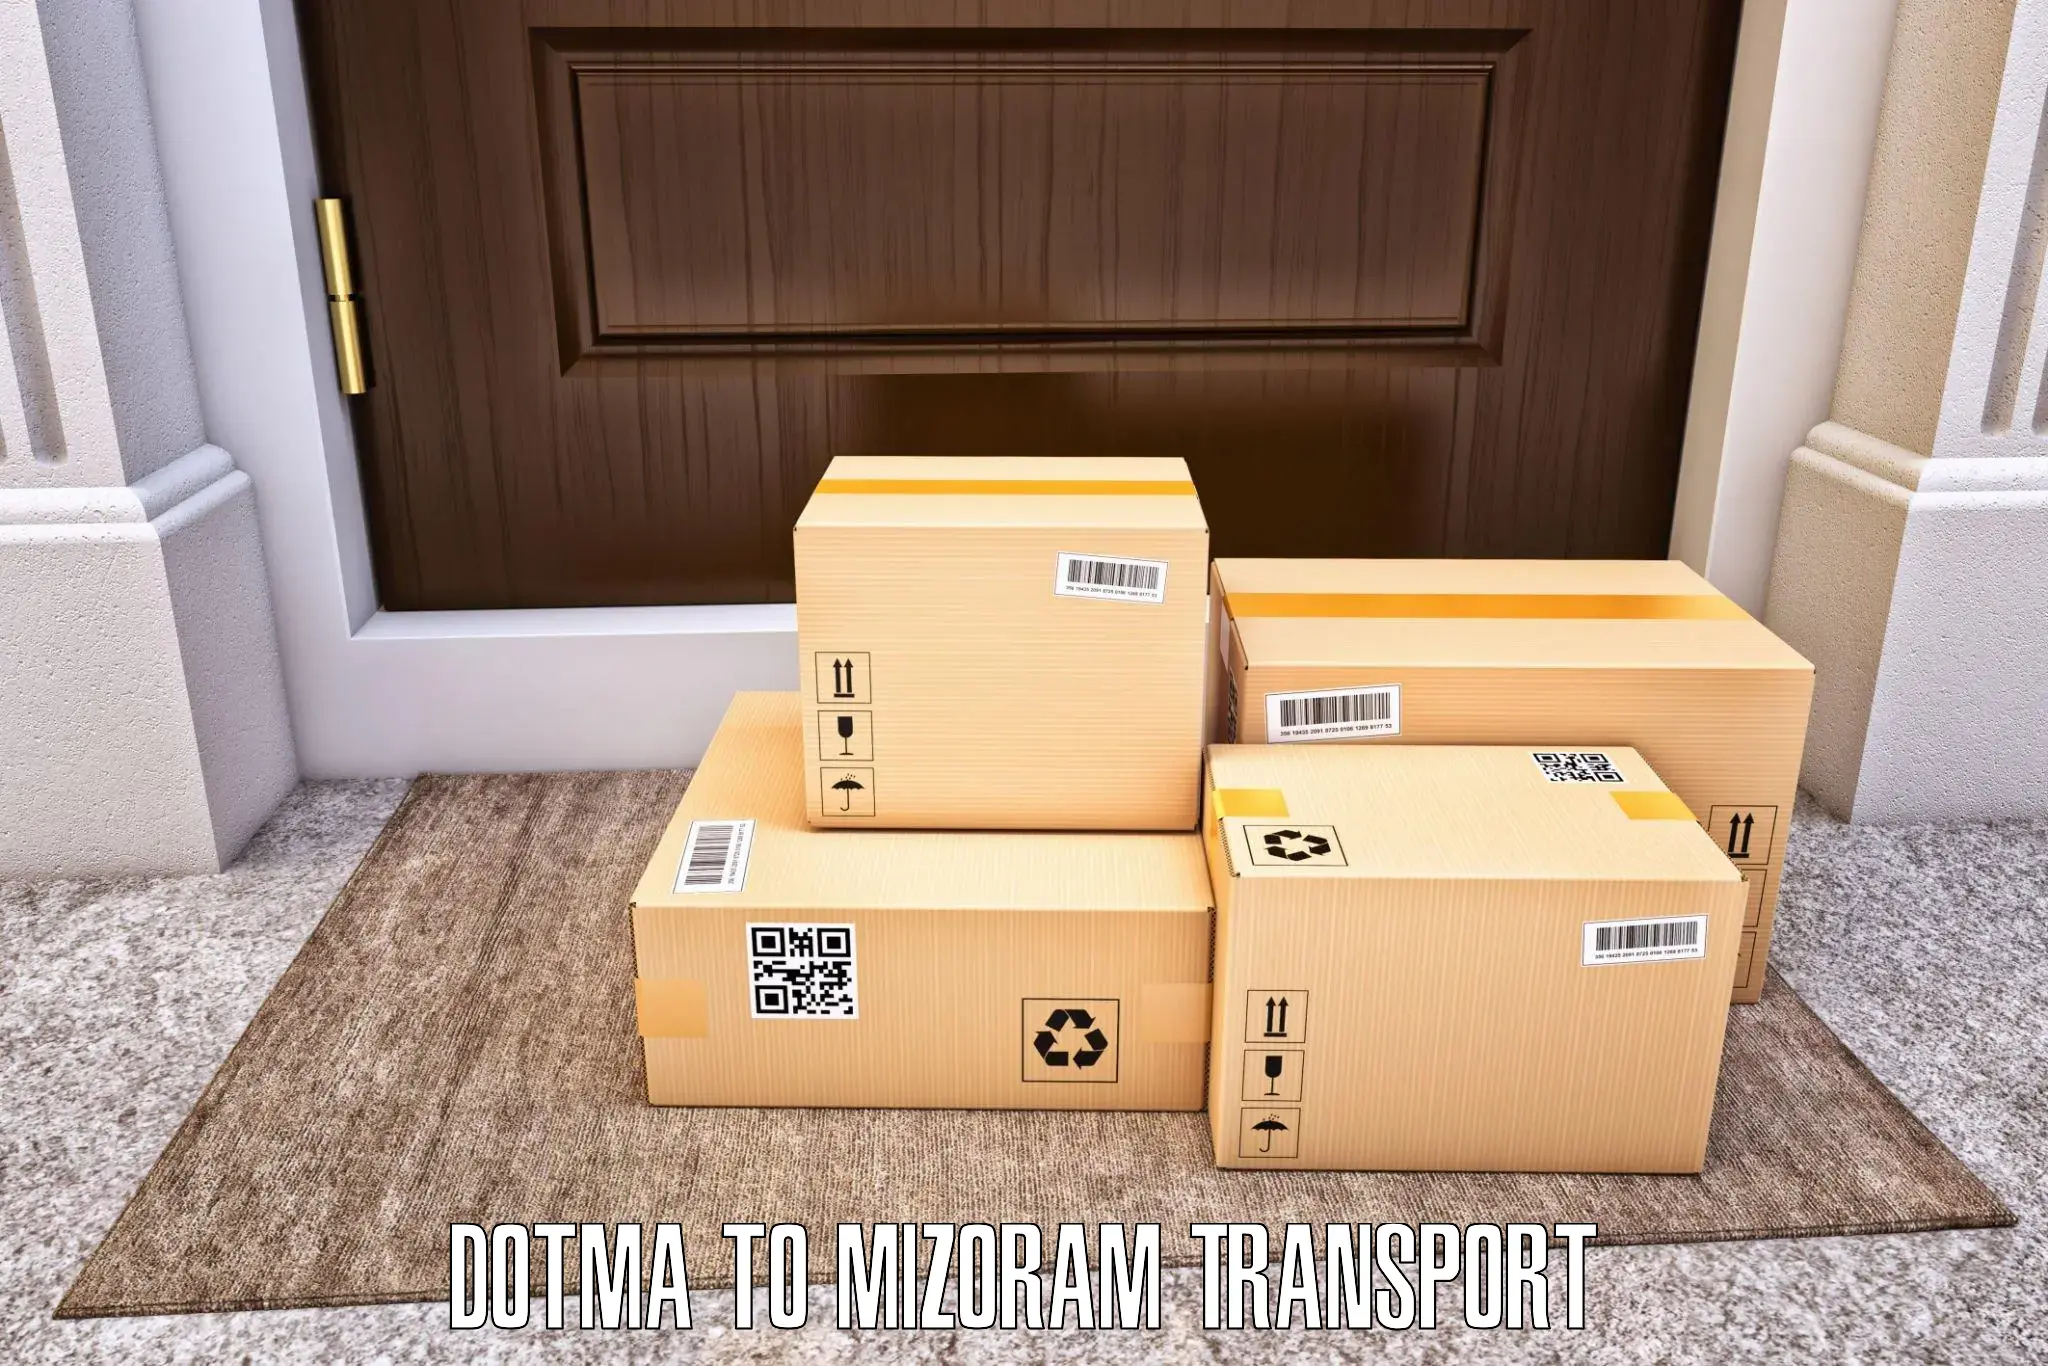 Scooty parcel Dotma to Darlawn